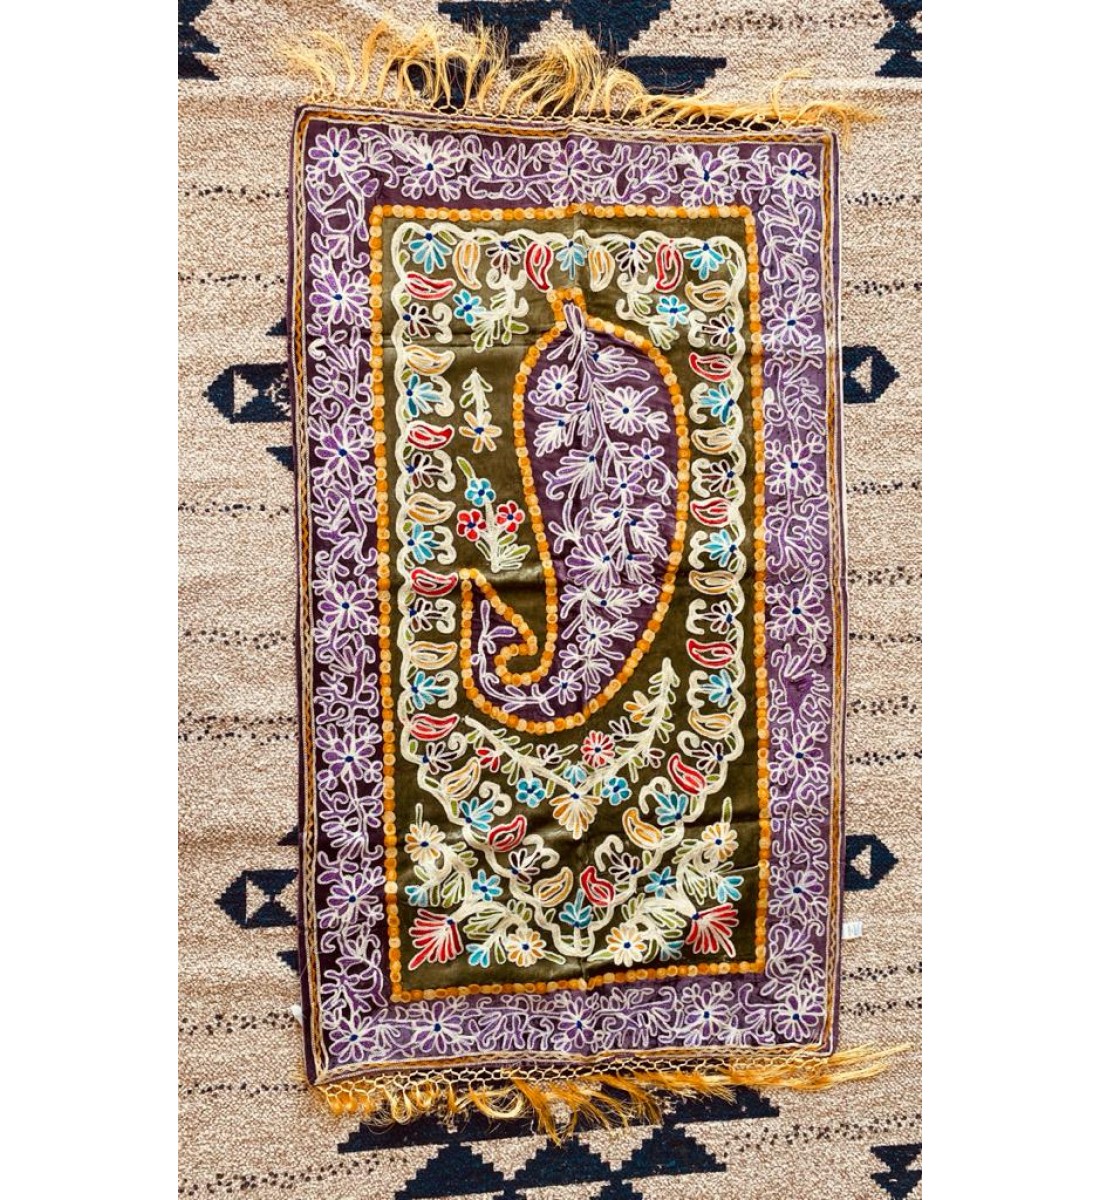 Turkish prayer rugs